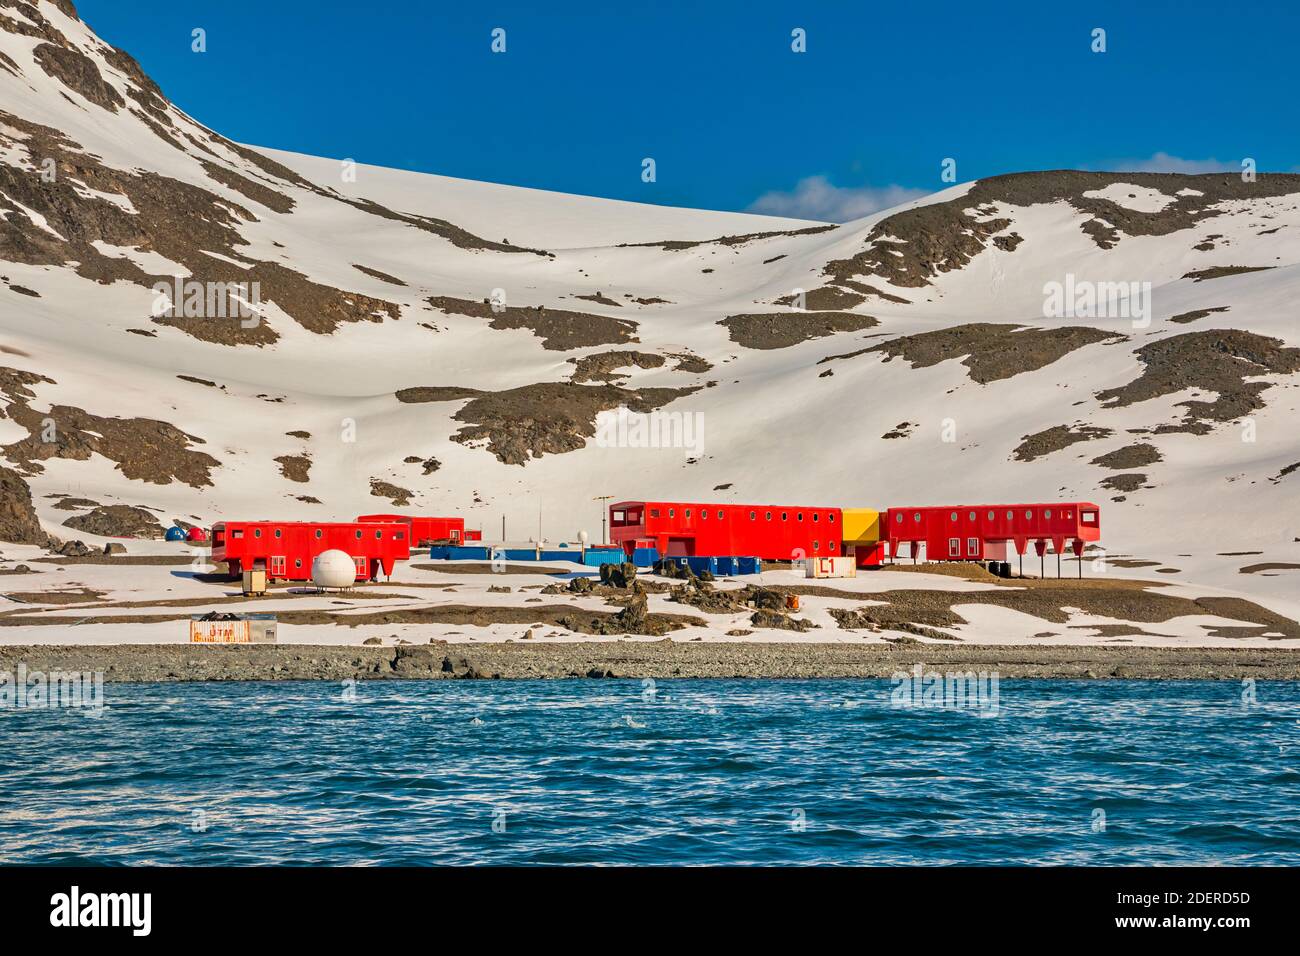 La base scientifique espagnole Juan Carlos I Antarctique, sur les îles Shetland du Sud, Antarctique Banque D'Images